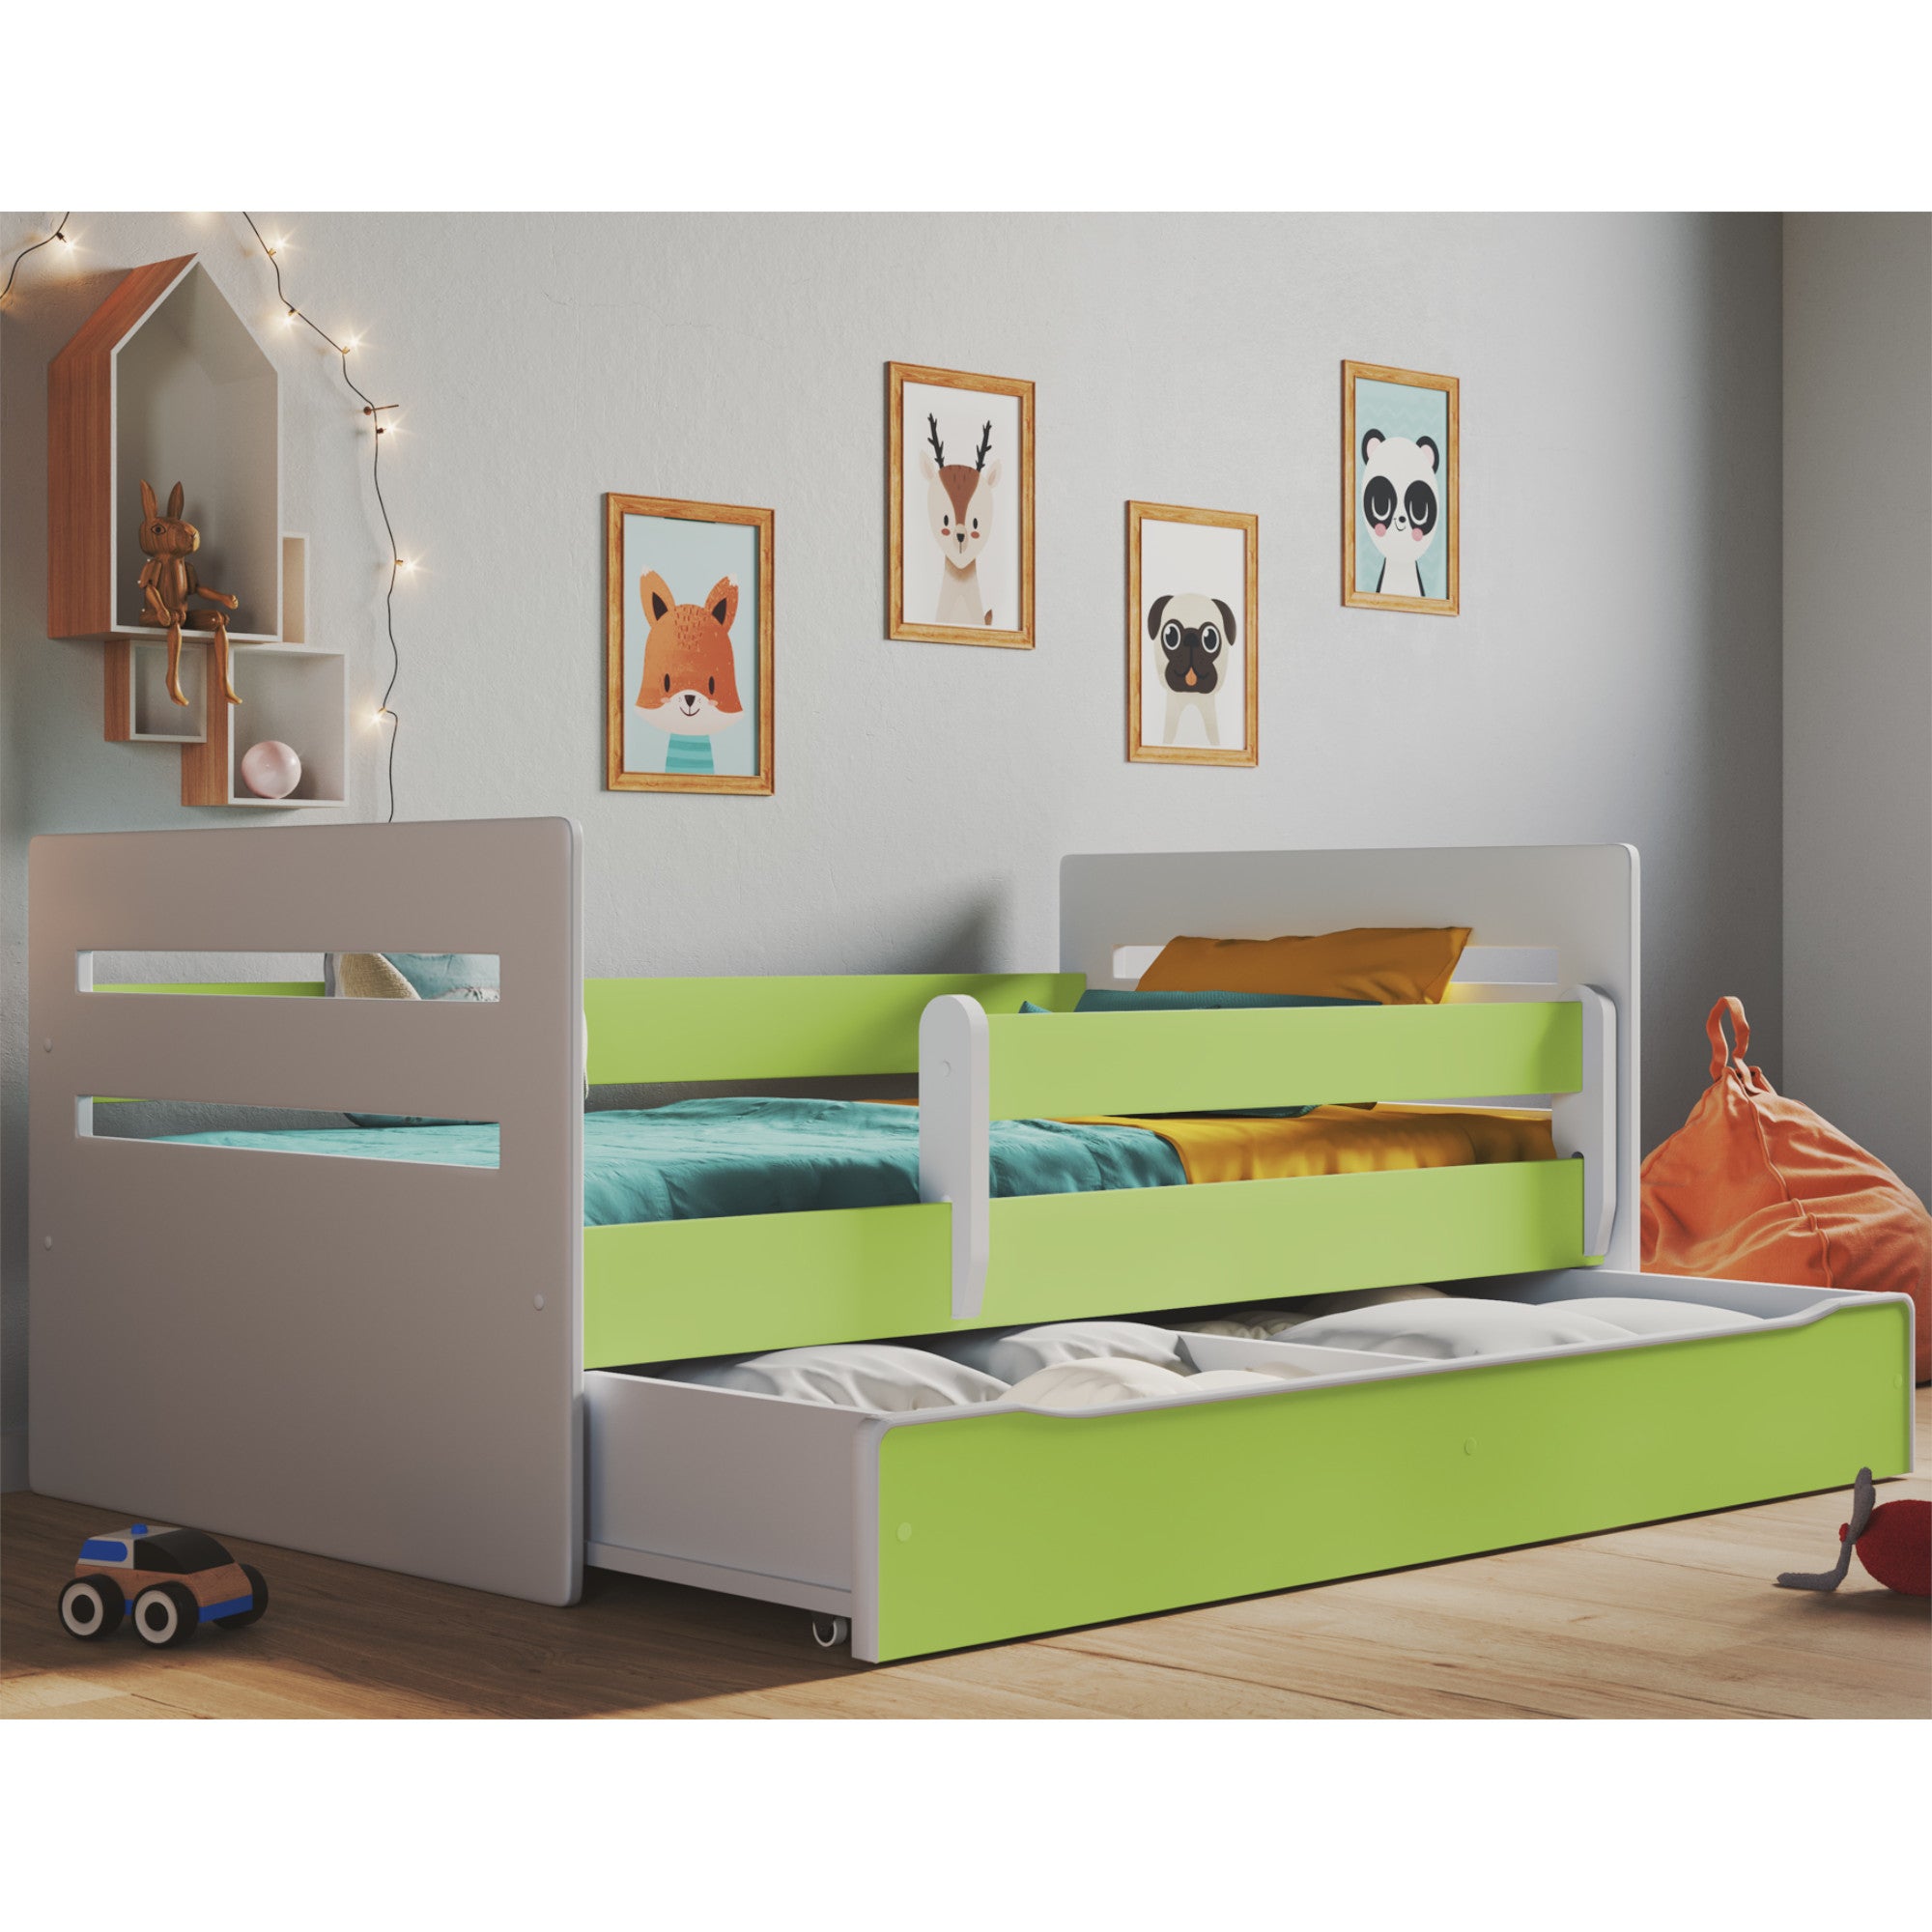 Kinderbett Riley inkl. Rollrost + Matratze + Bettschublade in grün 80*140, 80*160 oder 80*180 cm